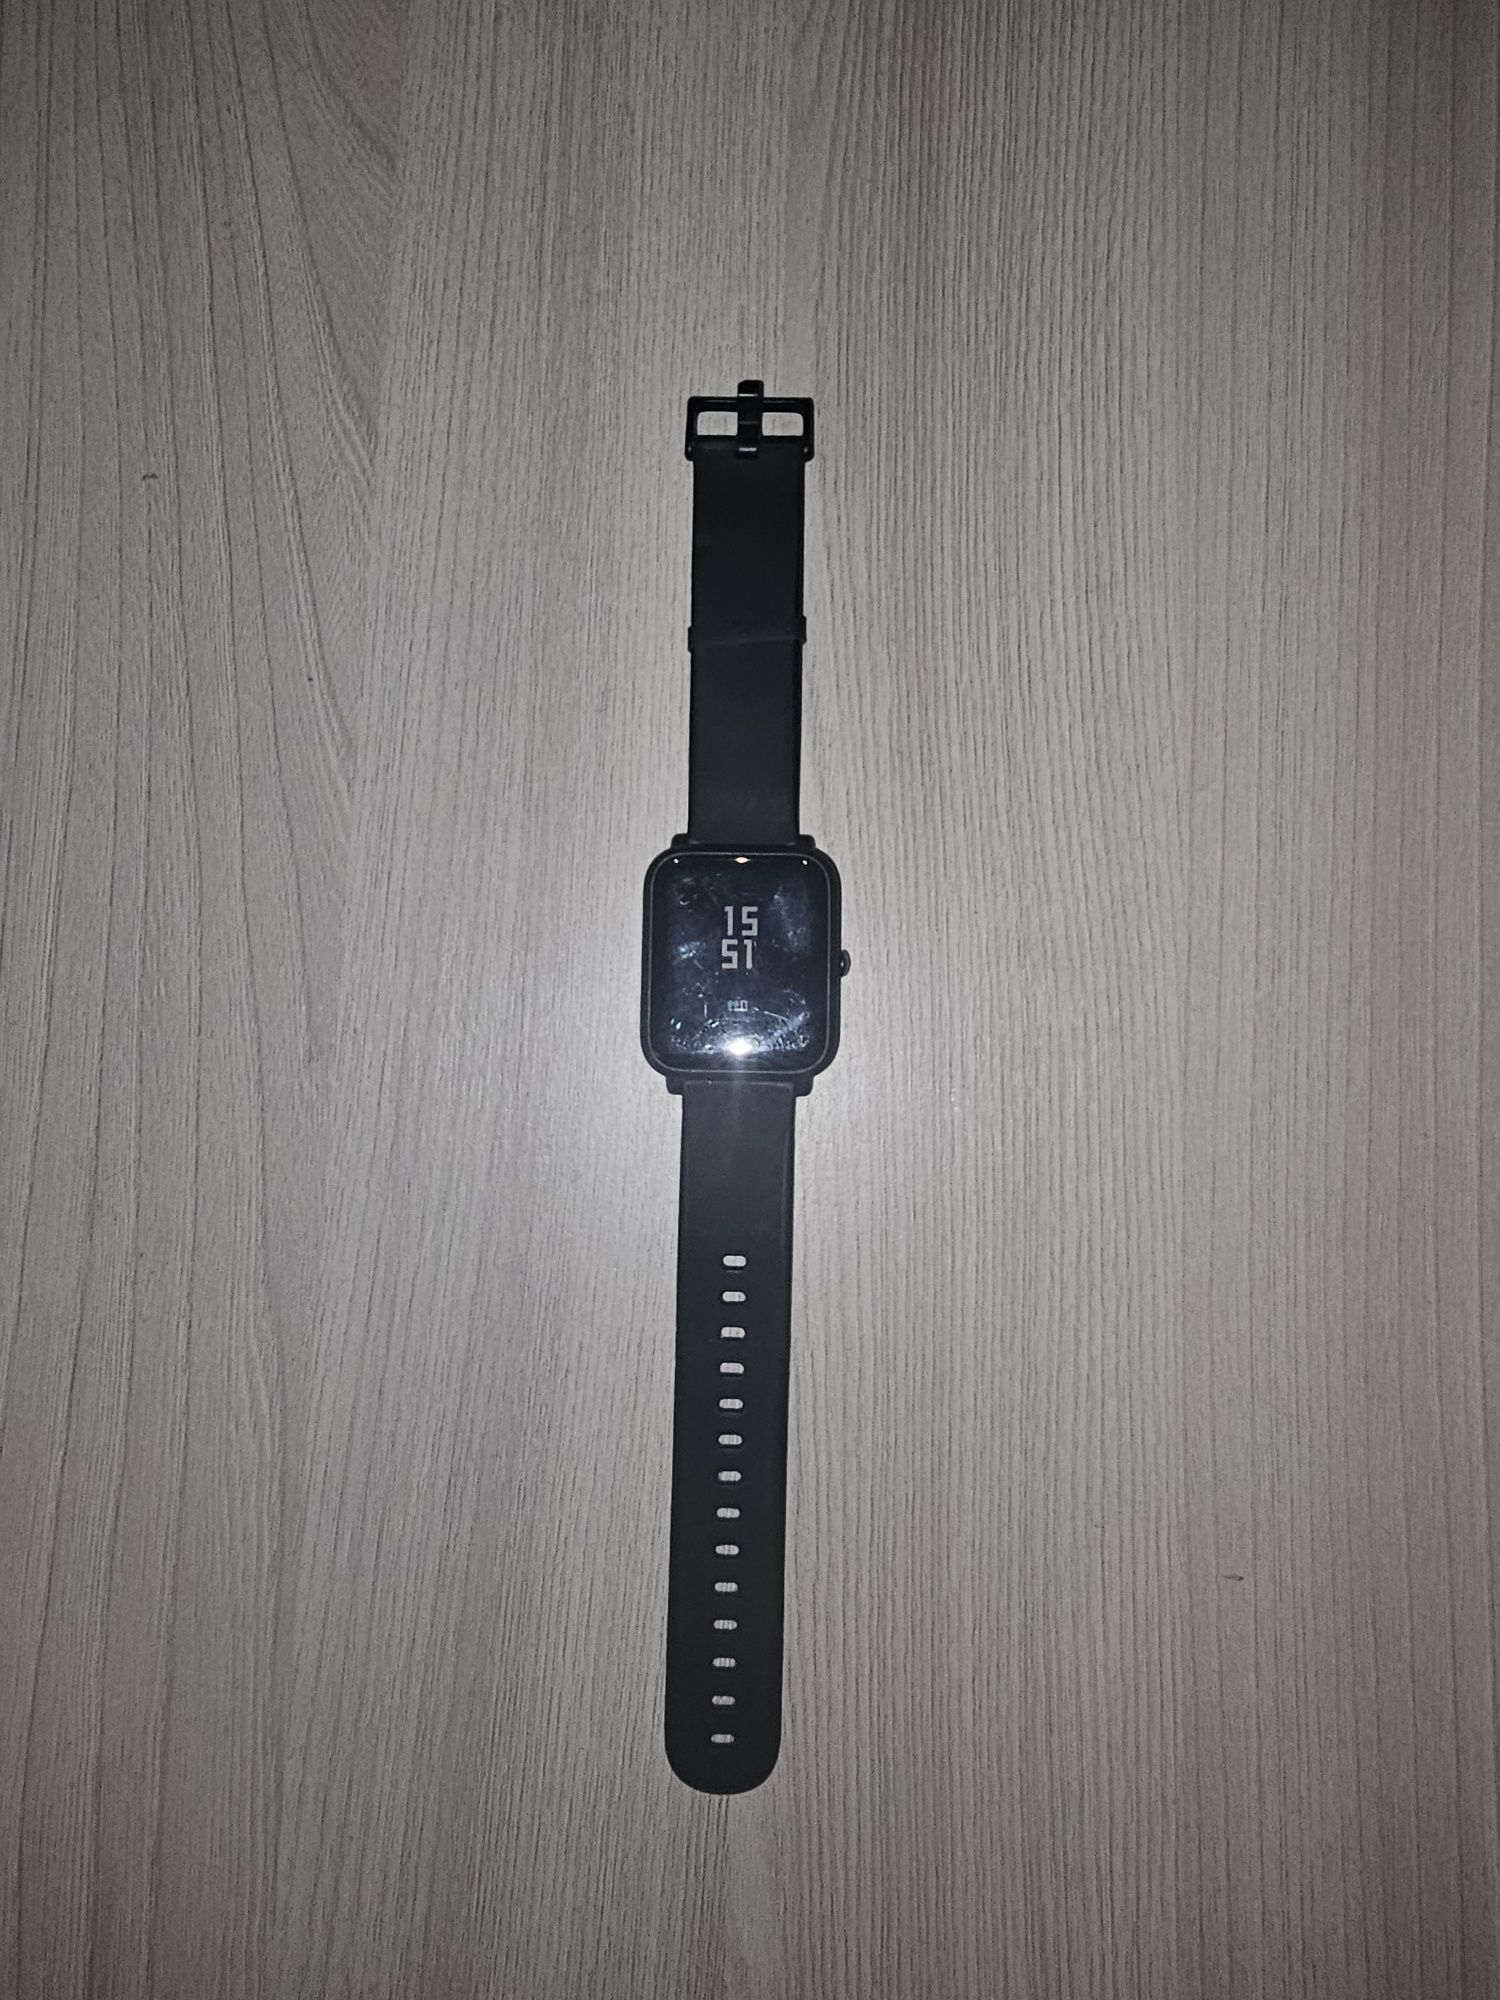 ШОК ЦЕНА!!! Продаётся часы Xiaomi Amazfit Bip